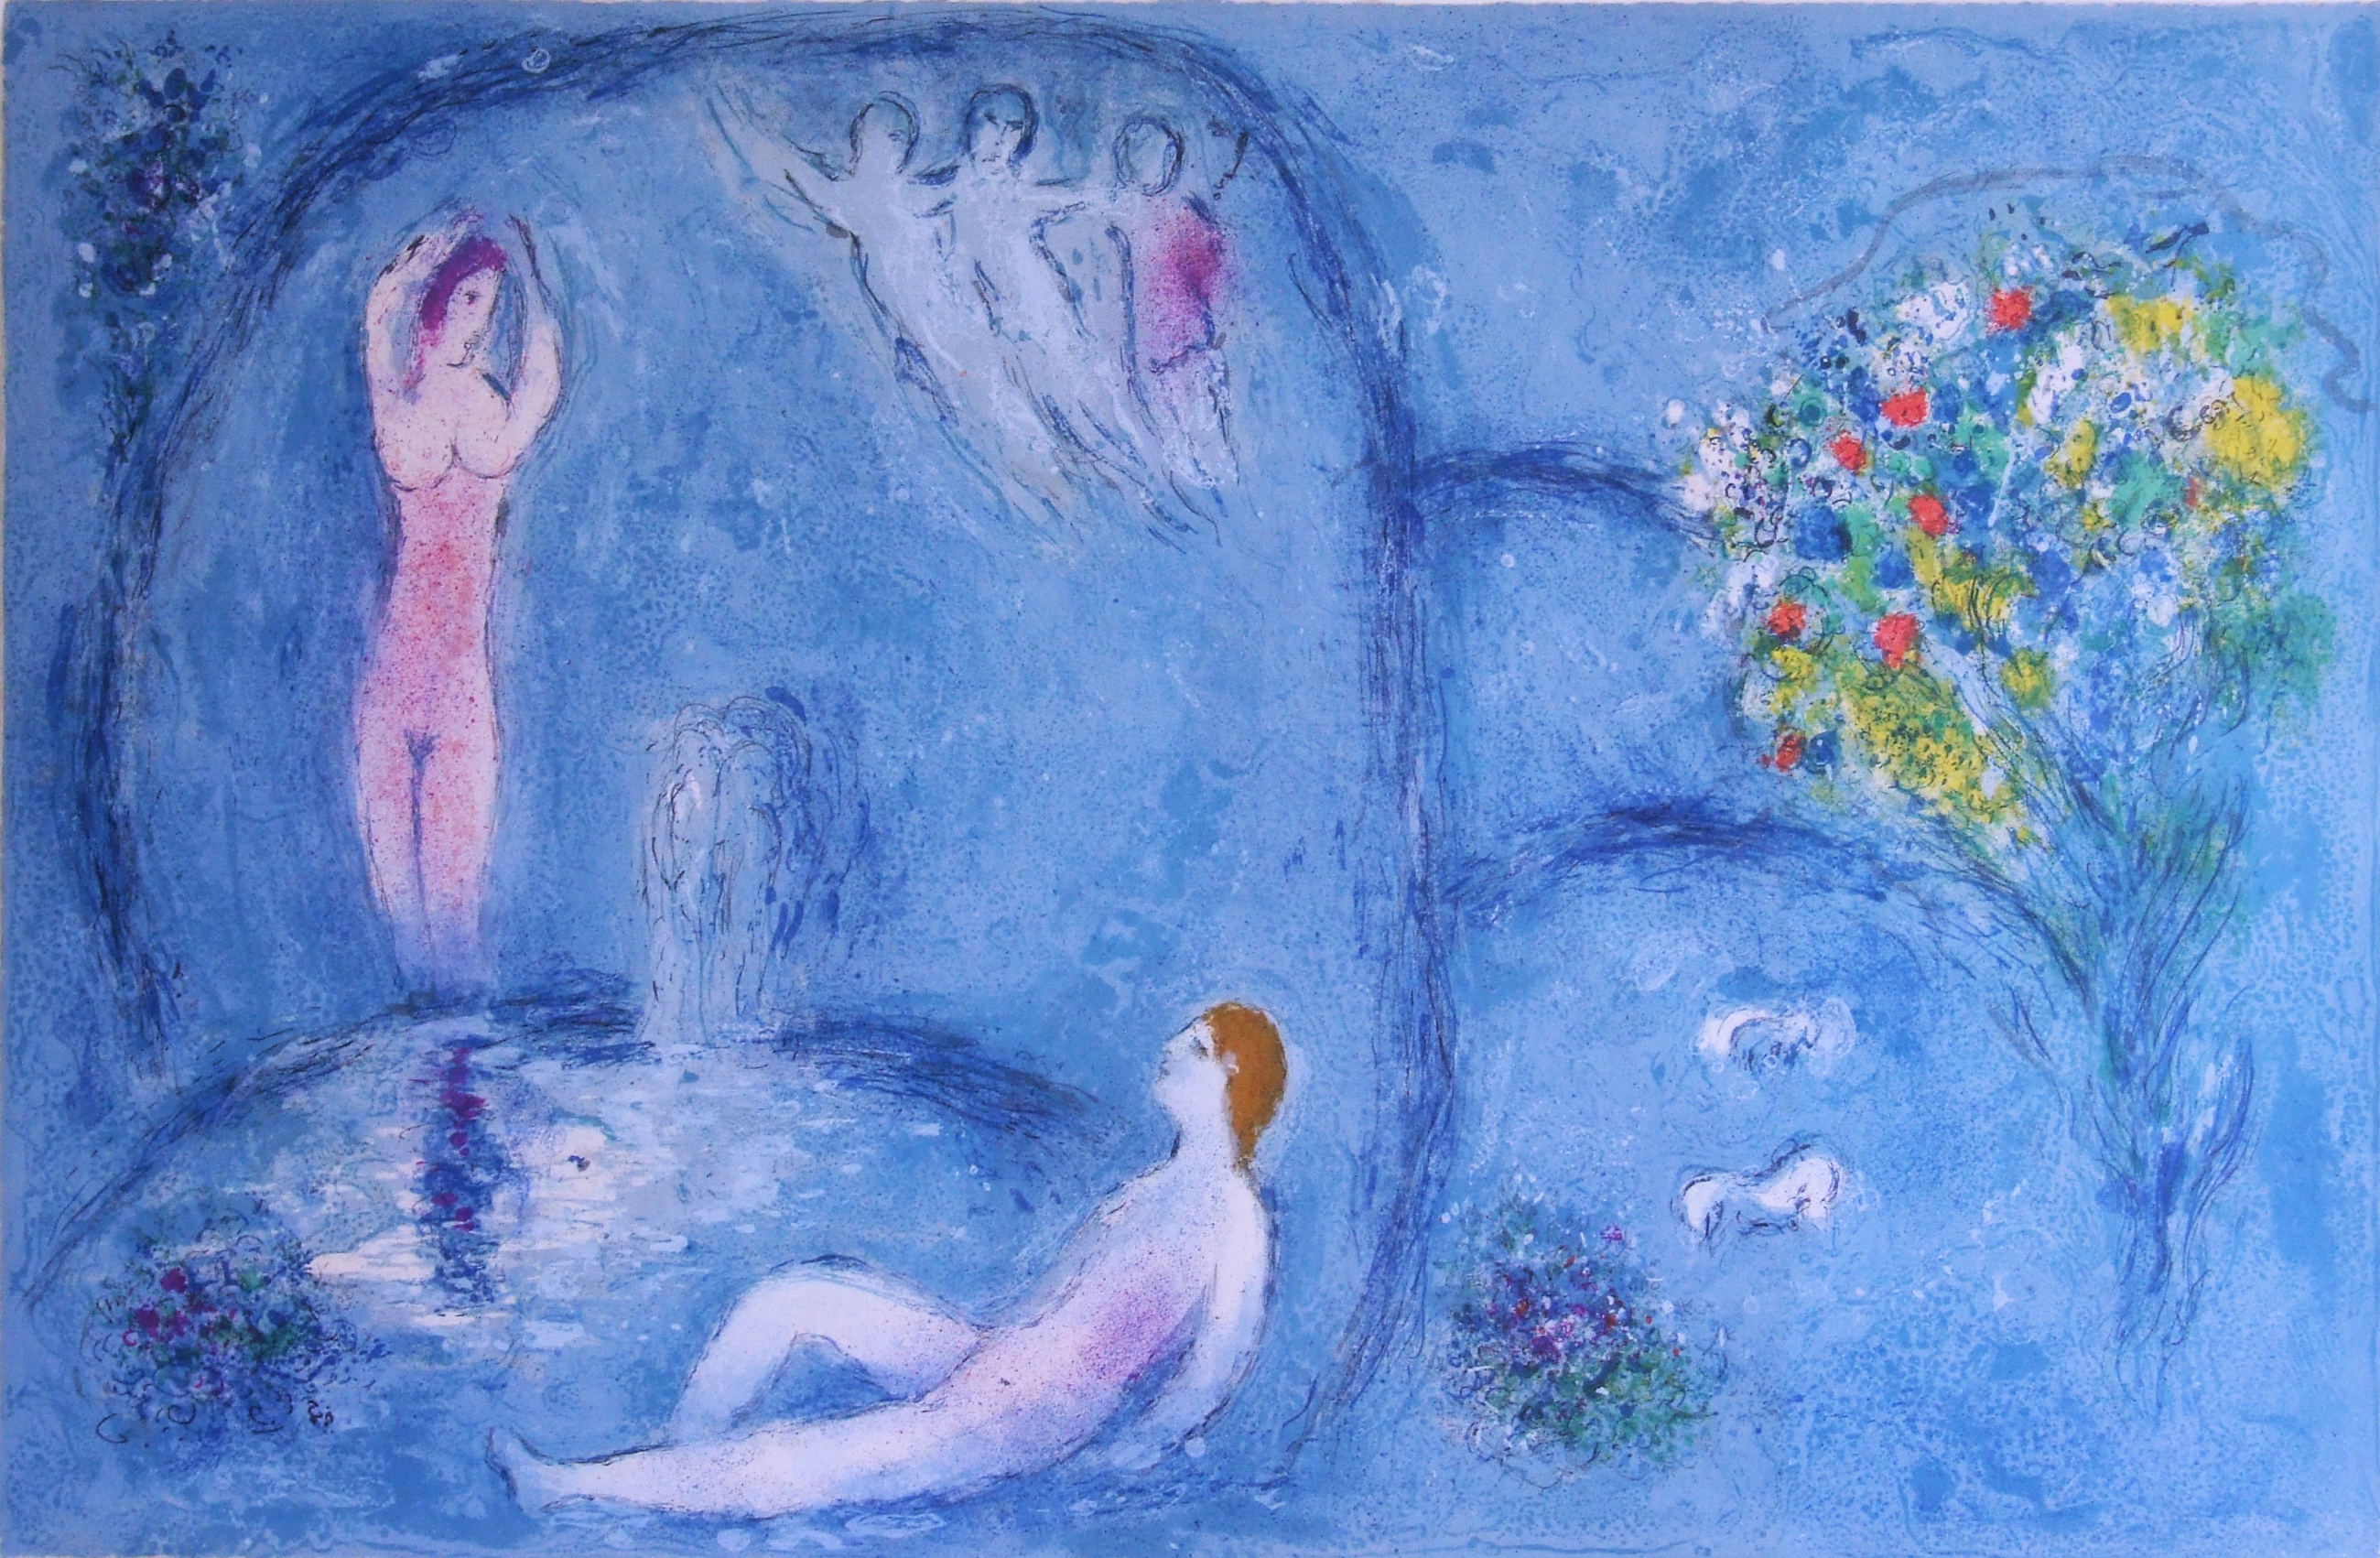 Chagall, Marc, Die Felsengrotte der Nymphen, 1961 (Mourlot 321), © VG Bild-Kunst, Bonn 2019